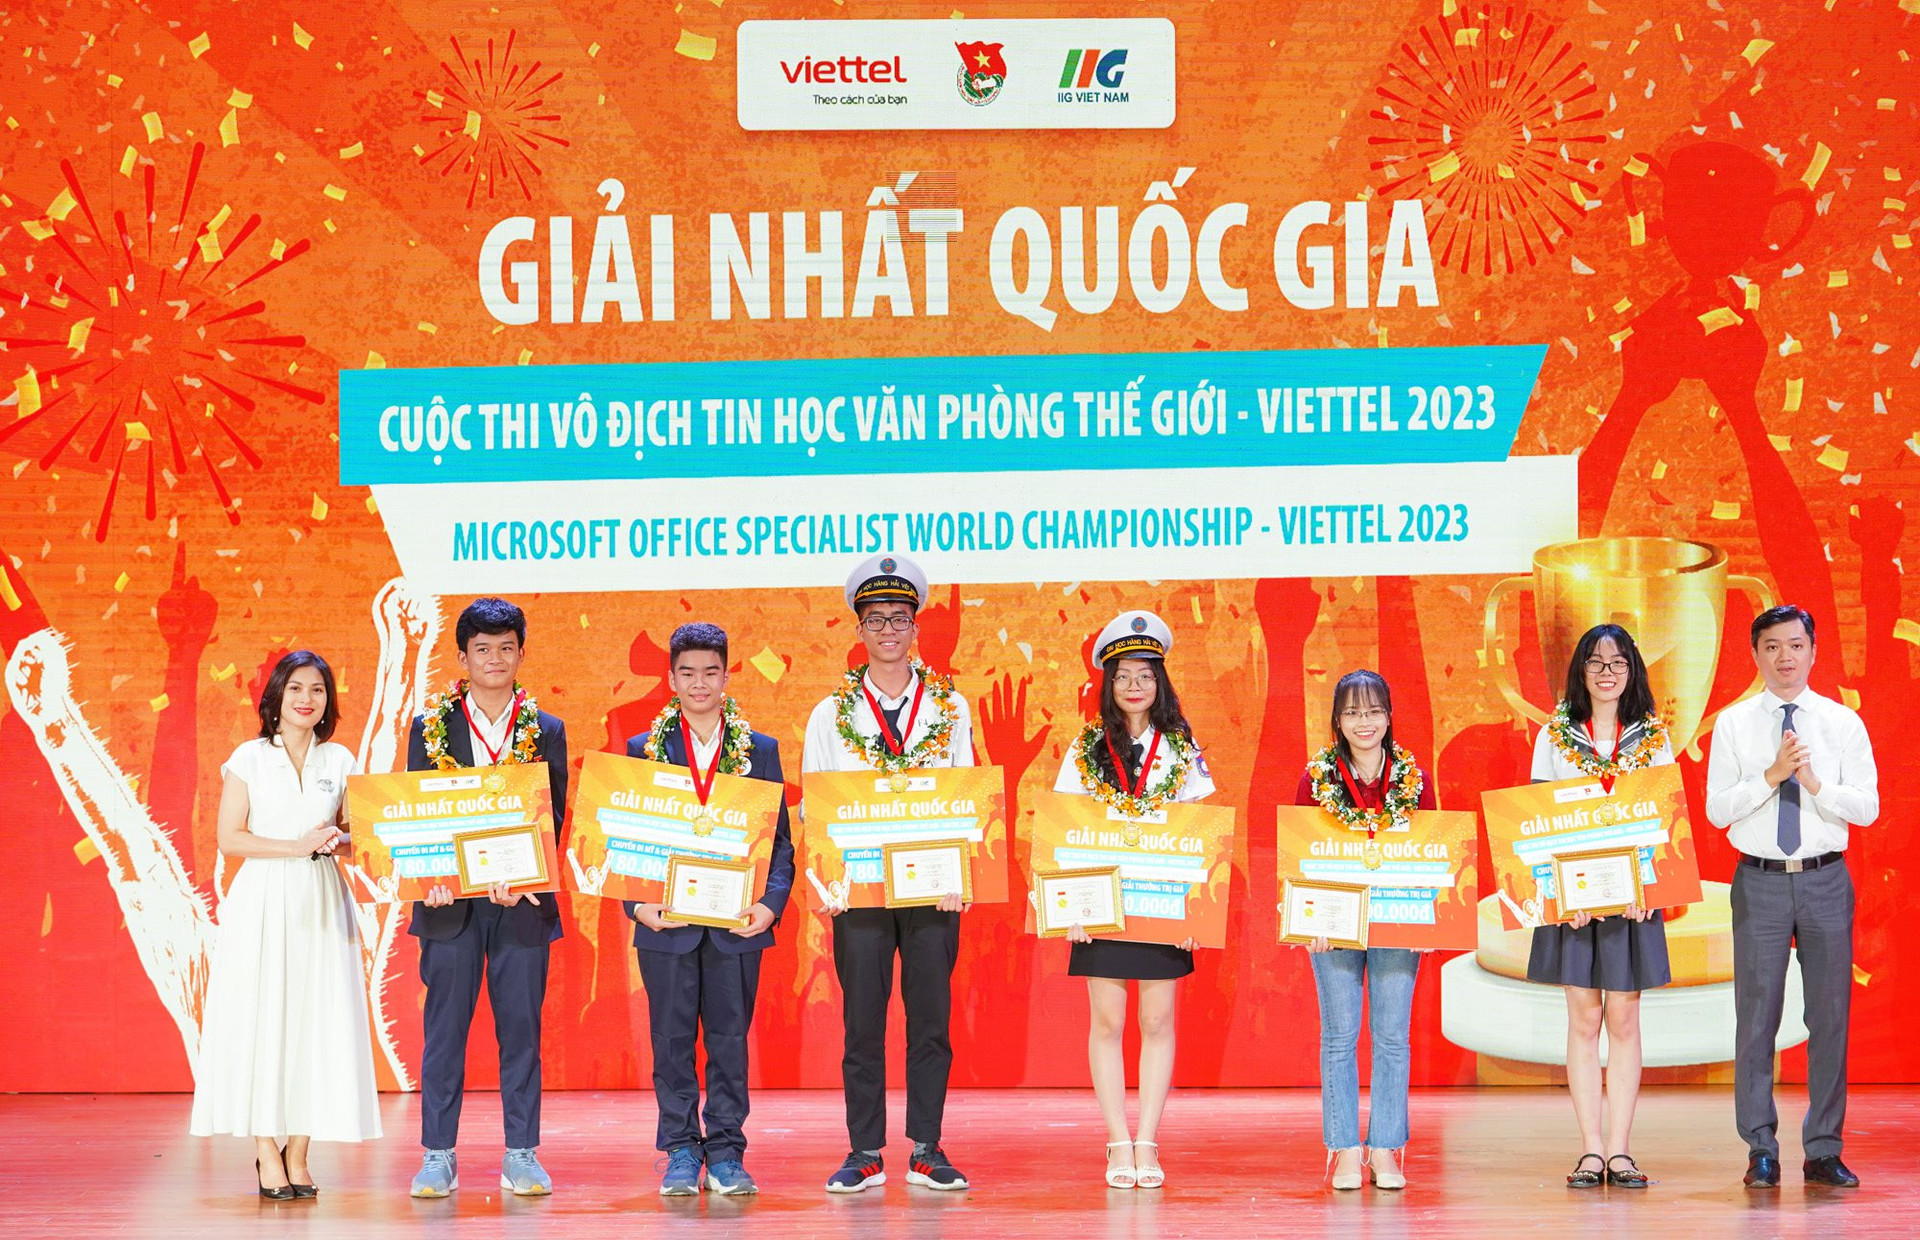 4 thí sinh Hà Nội đoạt giải Nhất cuộc thi tin học văn phòng và thiết kế đồ họa thế giới 